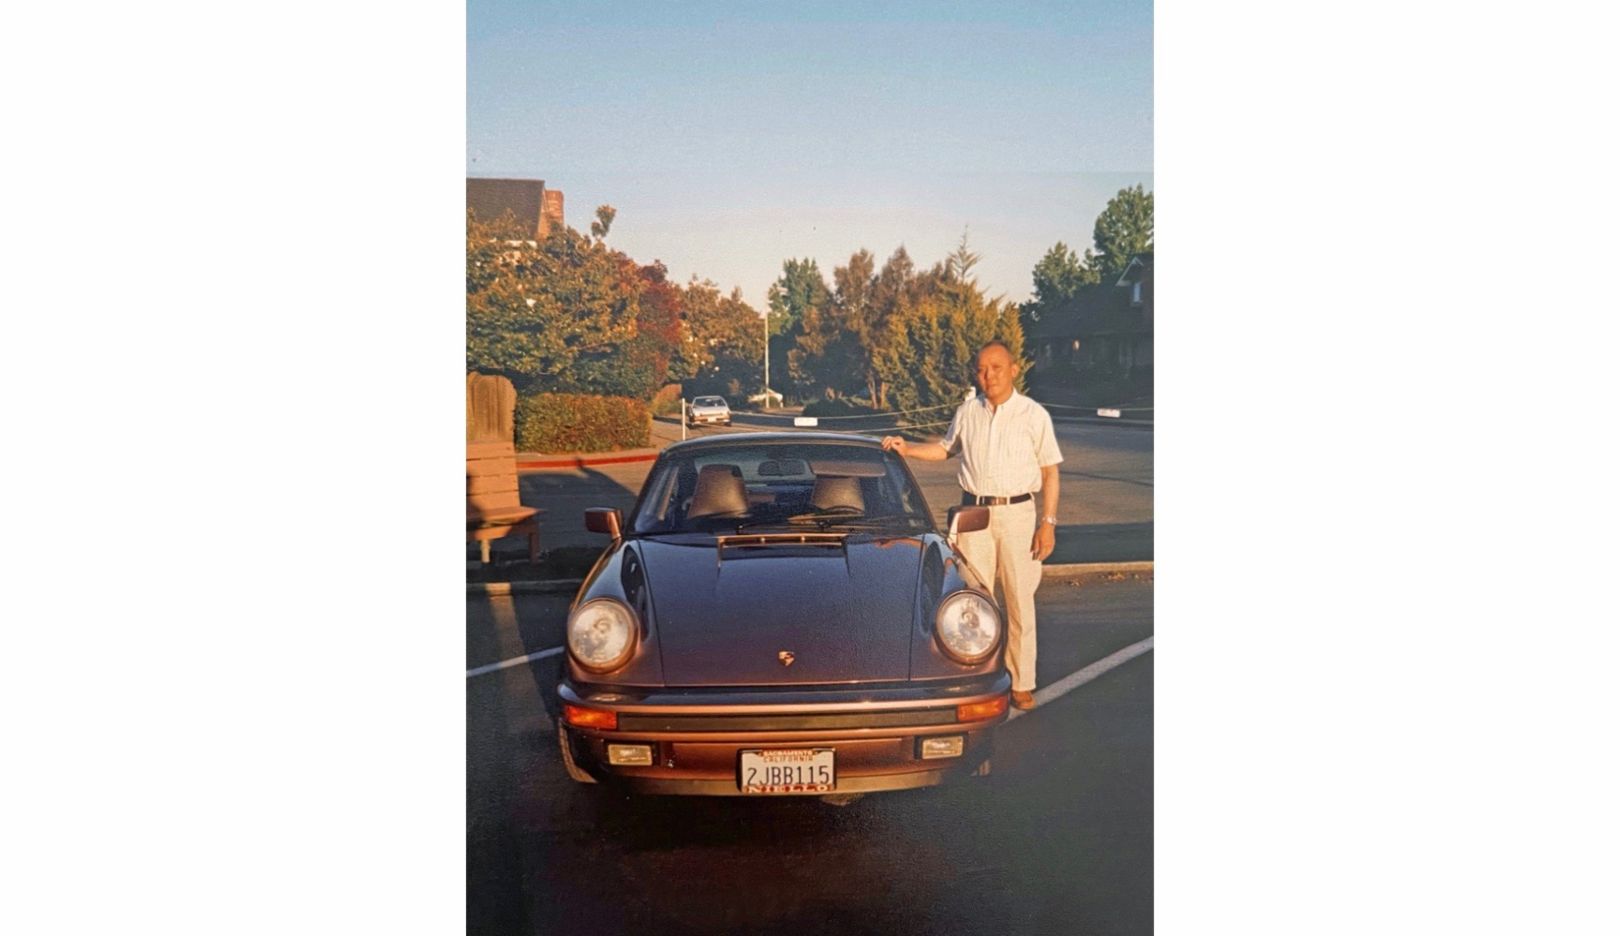 国际知名影星吴彦祖的父亲吴振 (George Wu) 在刚退休时买了人生第一辆保时捷 911。当时才 12 岁的吴彦祖，为父亲的新车挑选颜色——他选了稀有的黑醋栗红。